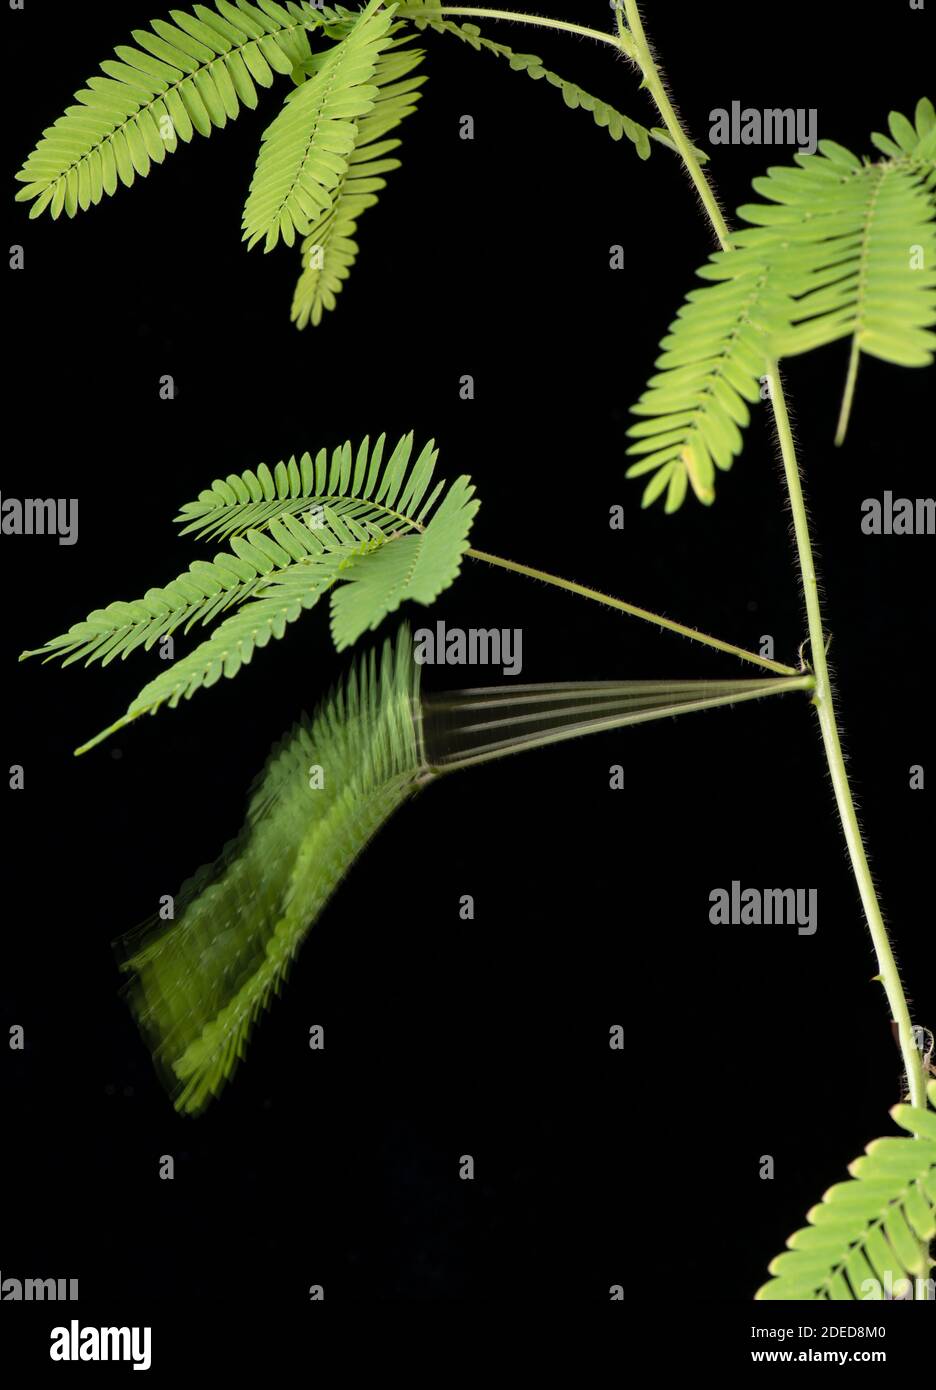 Pianta sensibile: Mimosa pudica. Immagine stroboscopica che mostra il collasso dello stelo dopo la stimolazione. Foto Stock